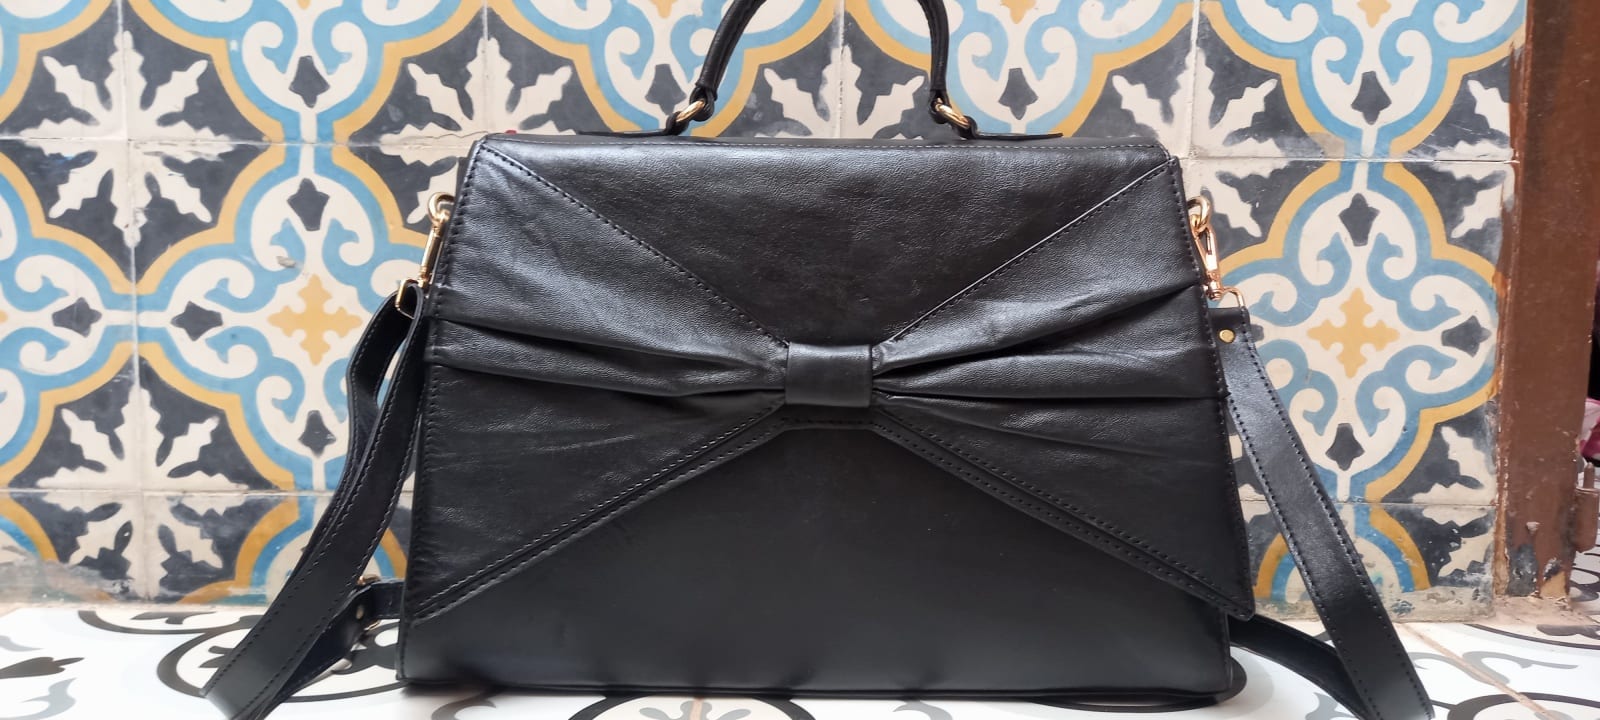  bag  Black Morocco